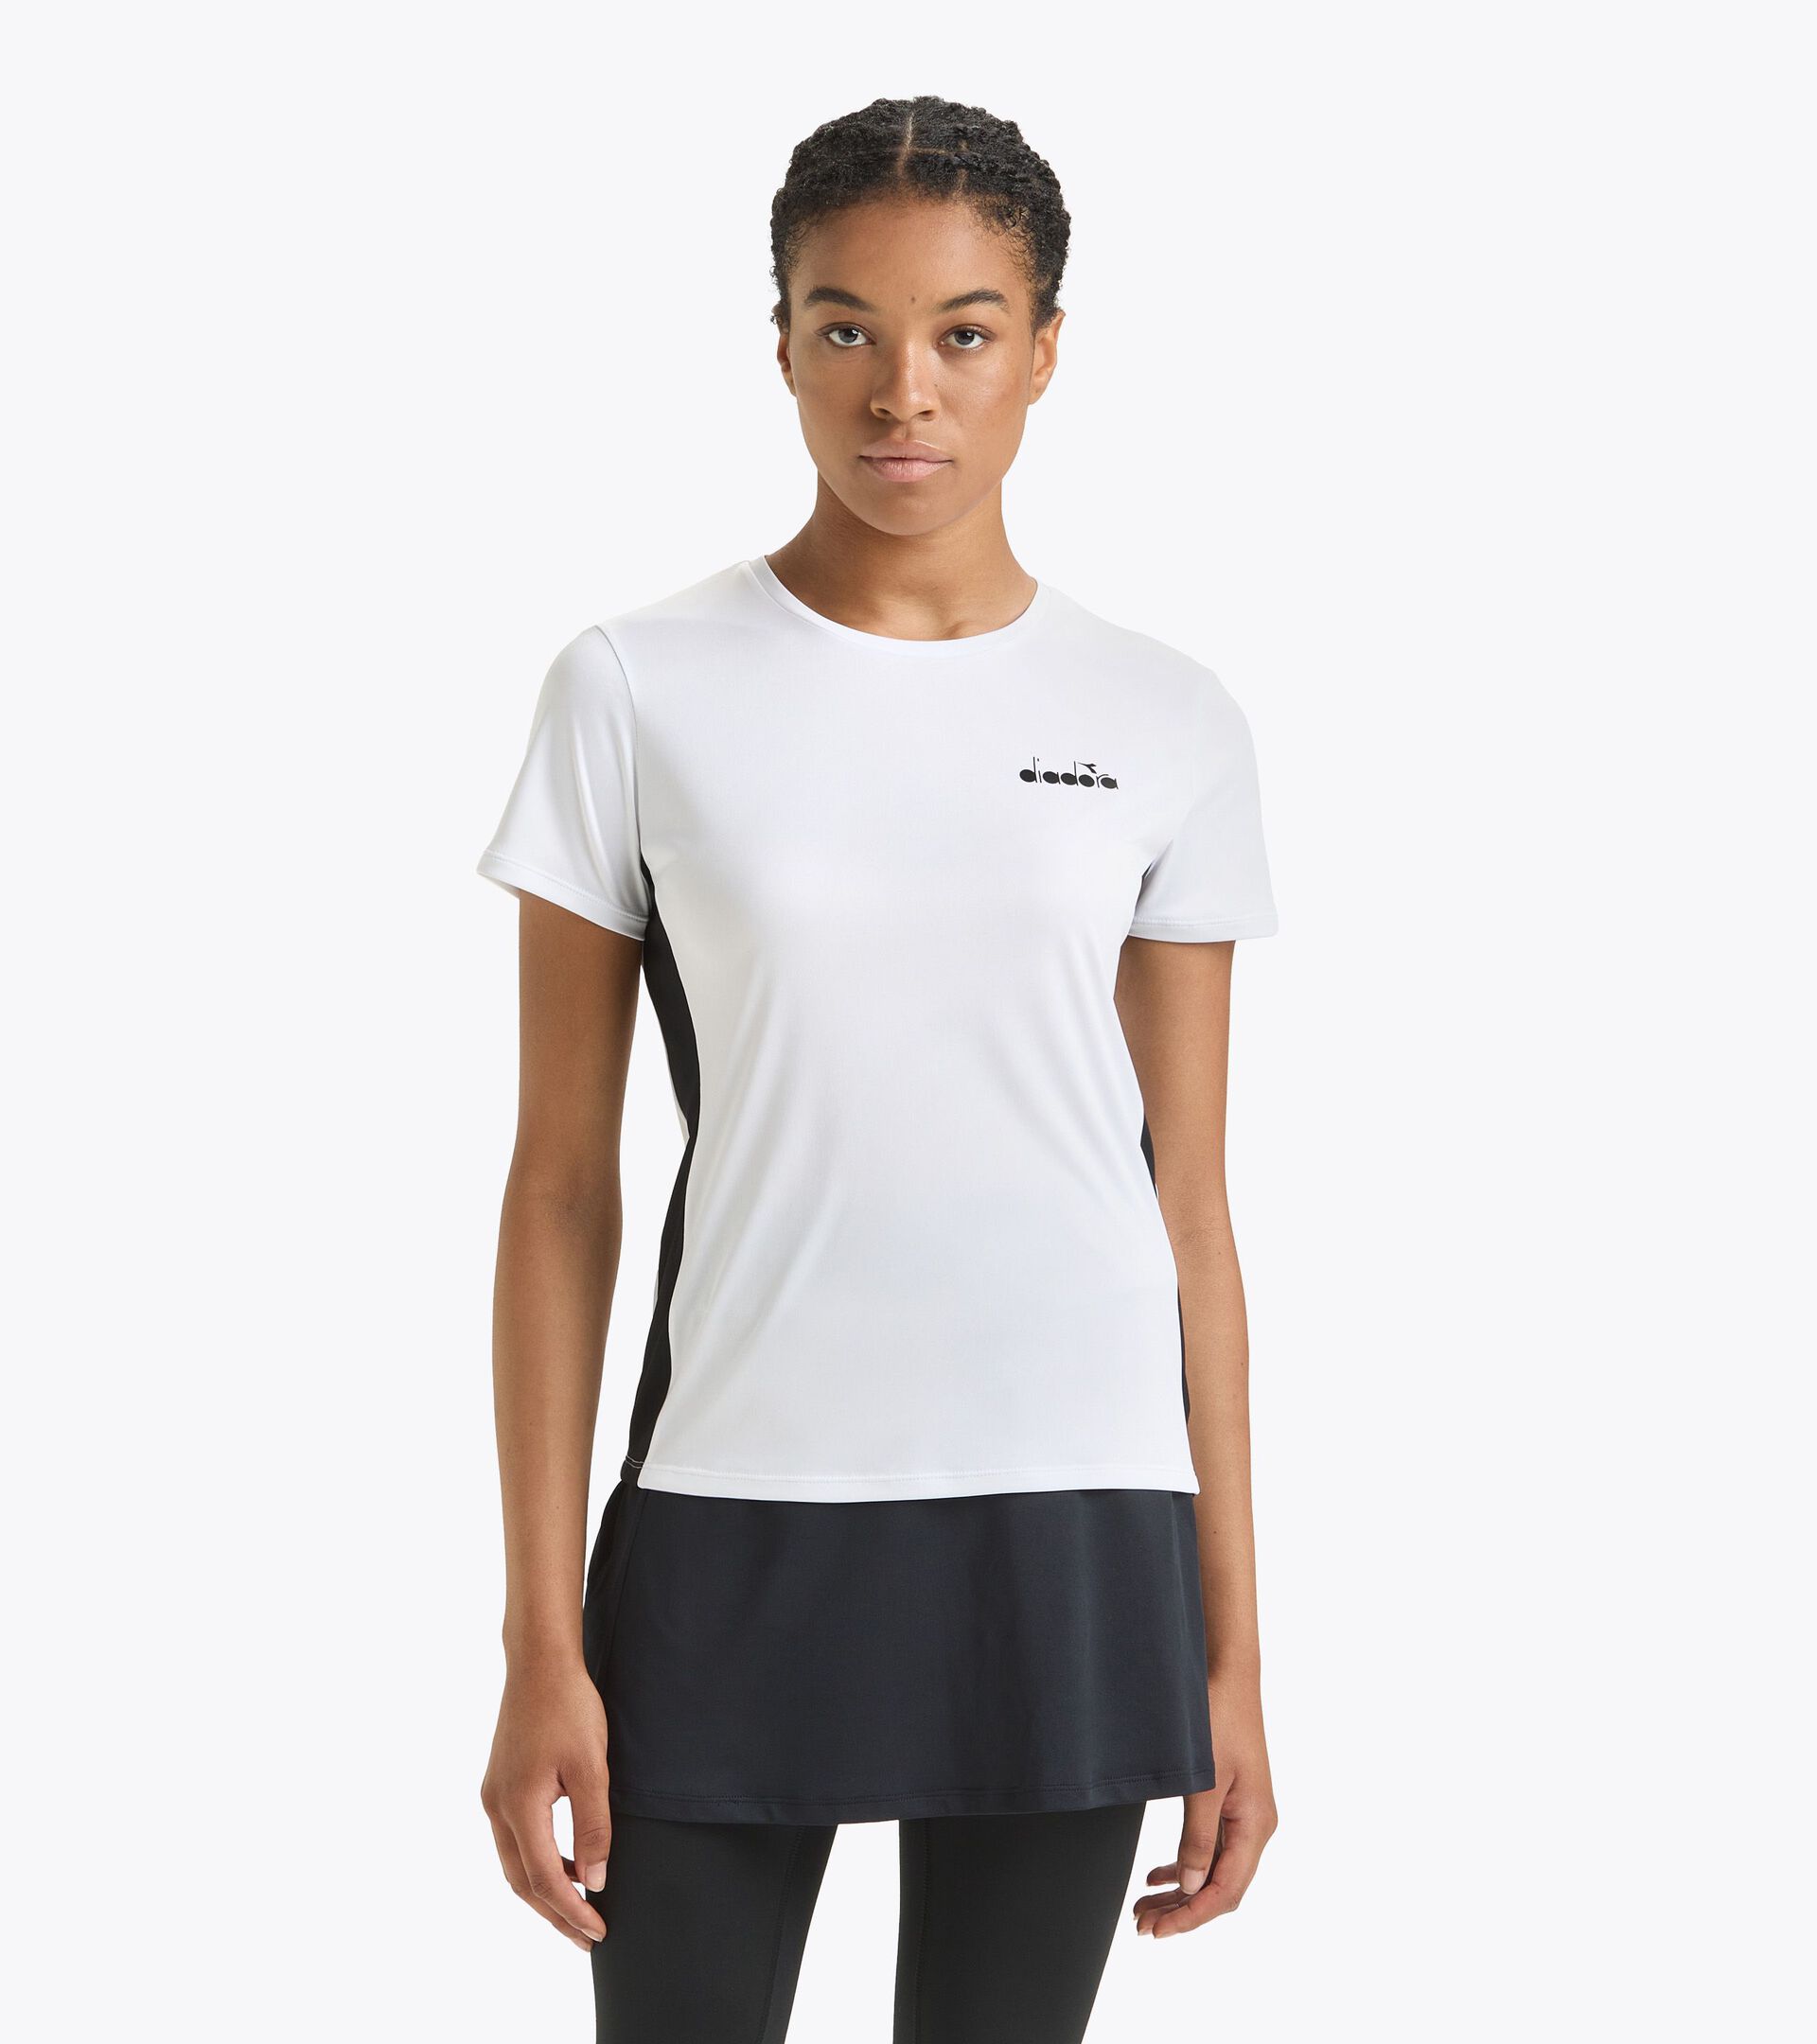 Tennis-T-Shirt - Damen L. SS T-SHIRT STRAHLENDE WEISS/SCHWARZ - Diadora